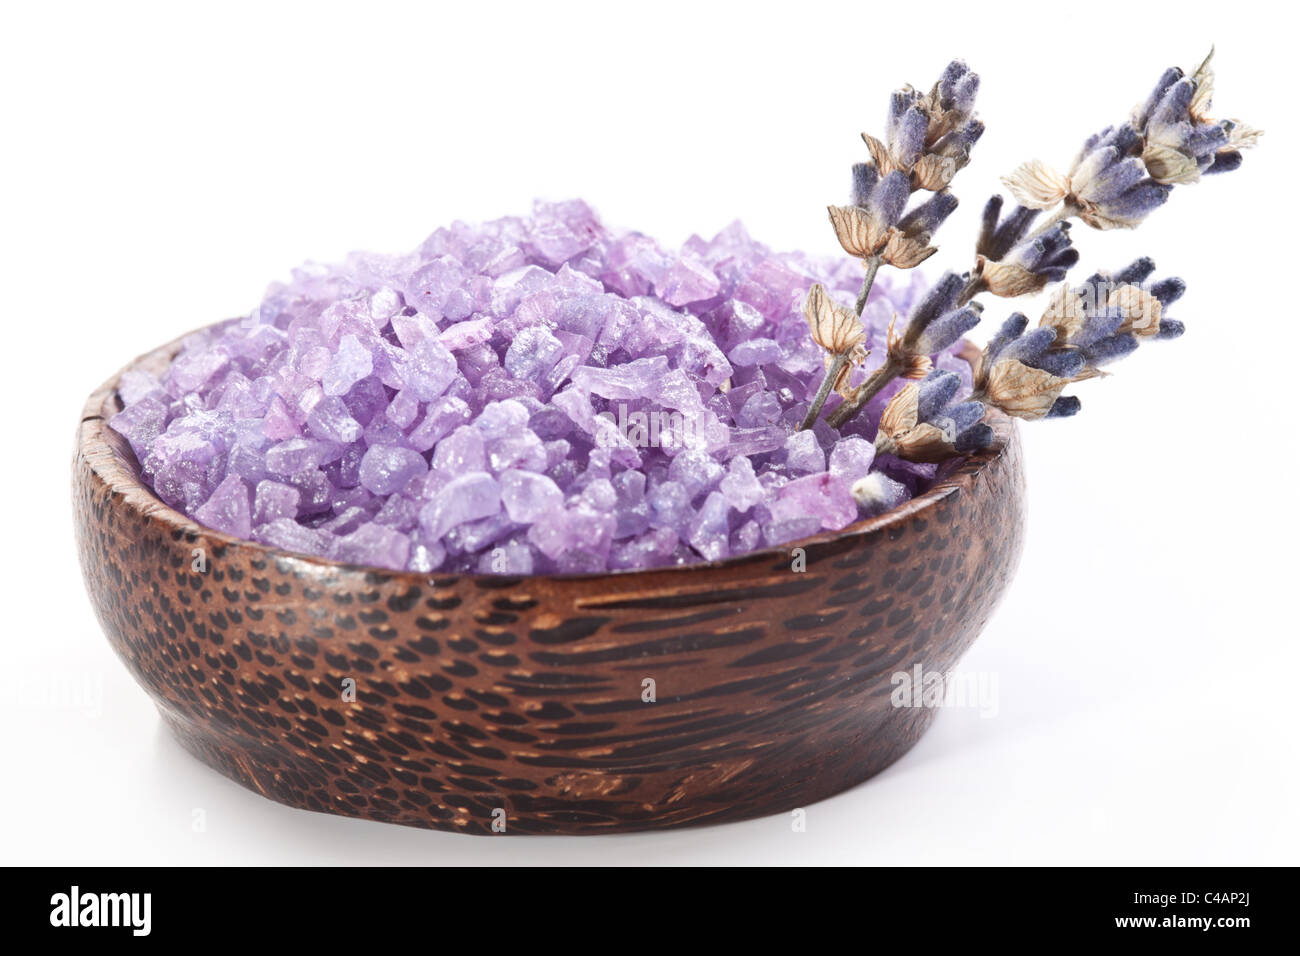 Meersalz und getrocknetem Lavendel auf einem weißen Hintergrund. Stockfoto